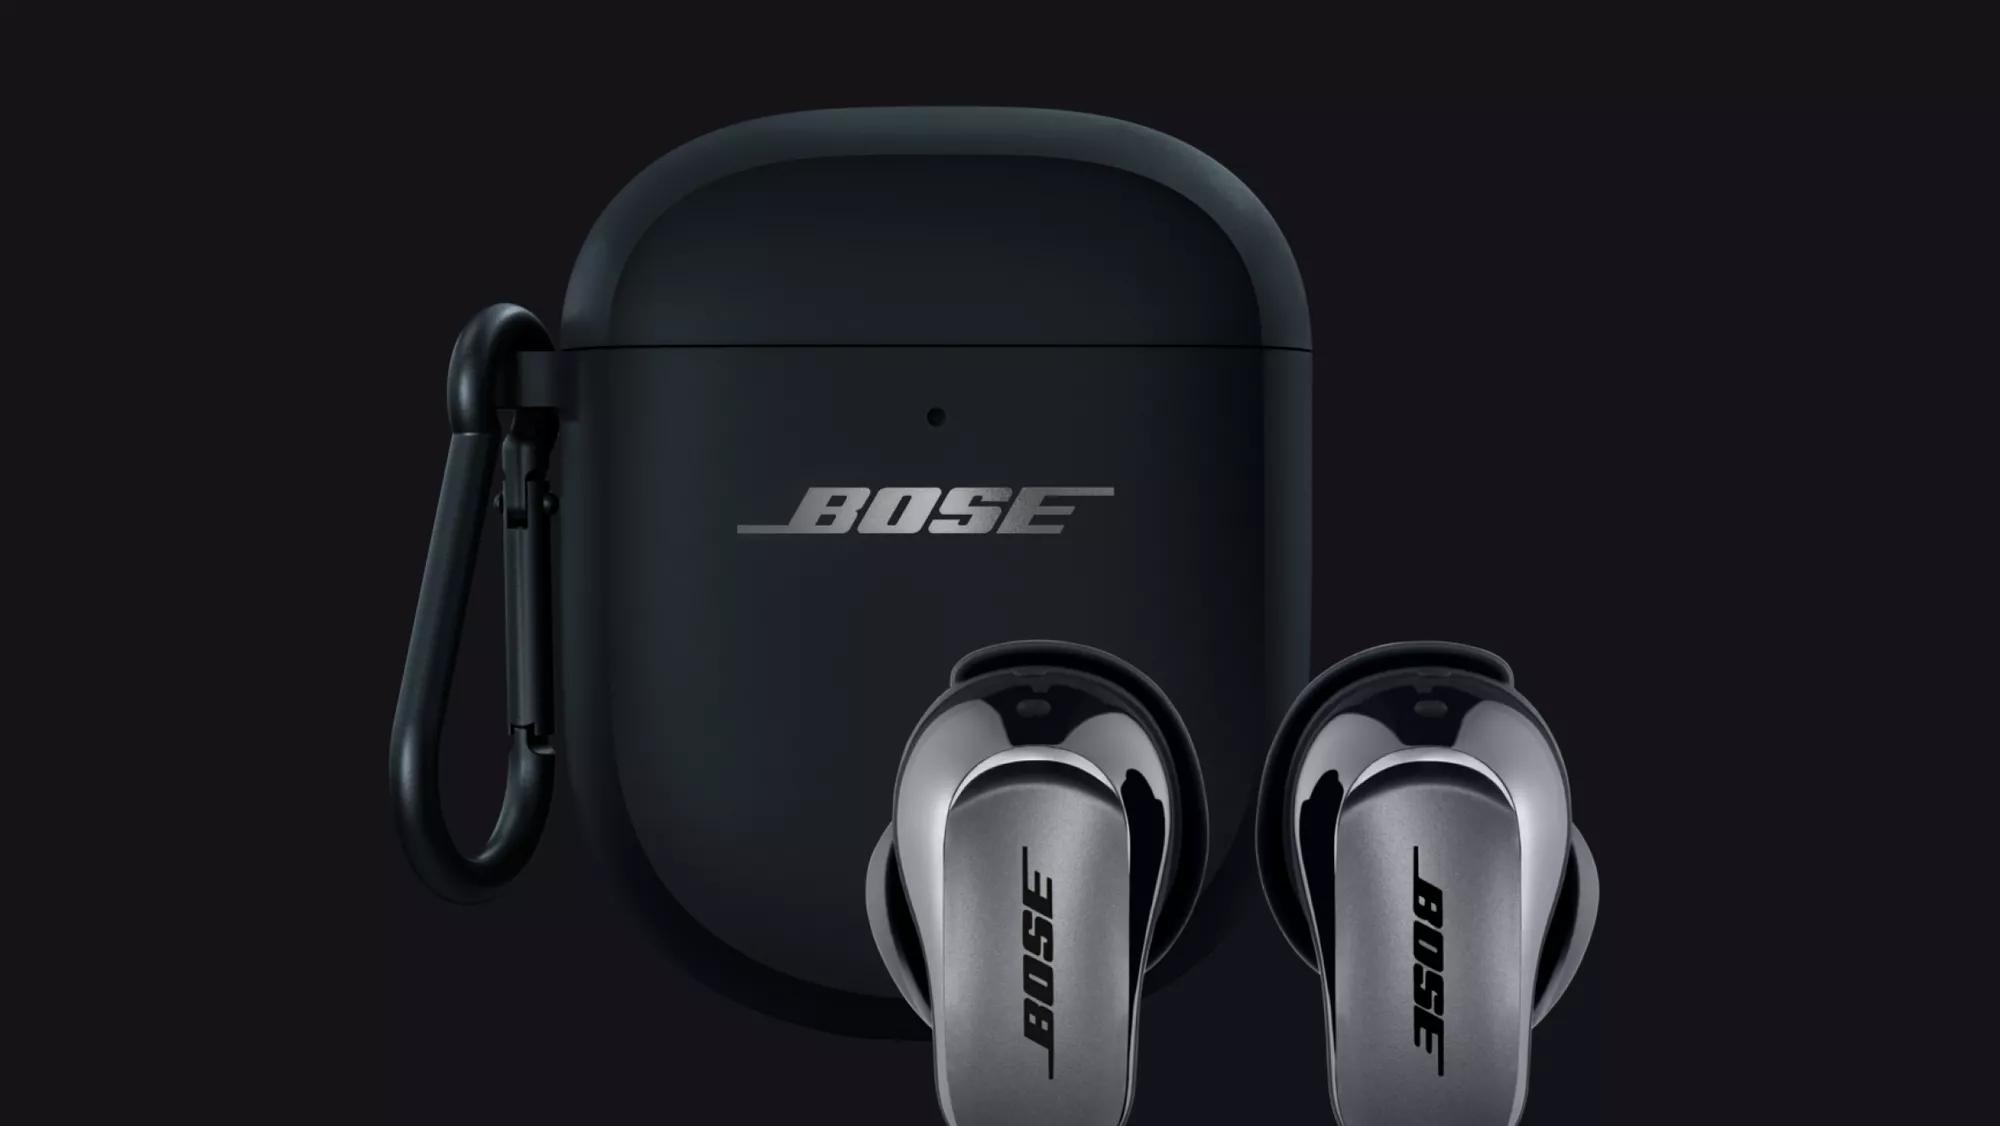  jusqu'à -30% sur les casques et écouteurs sans fil Bose